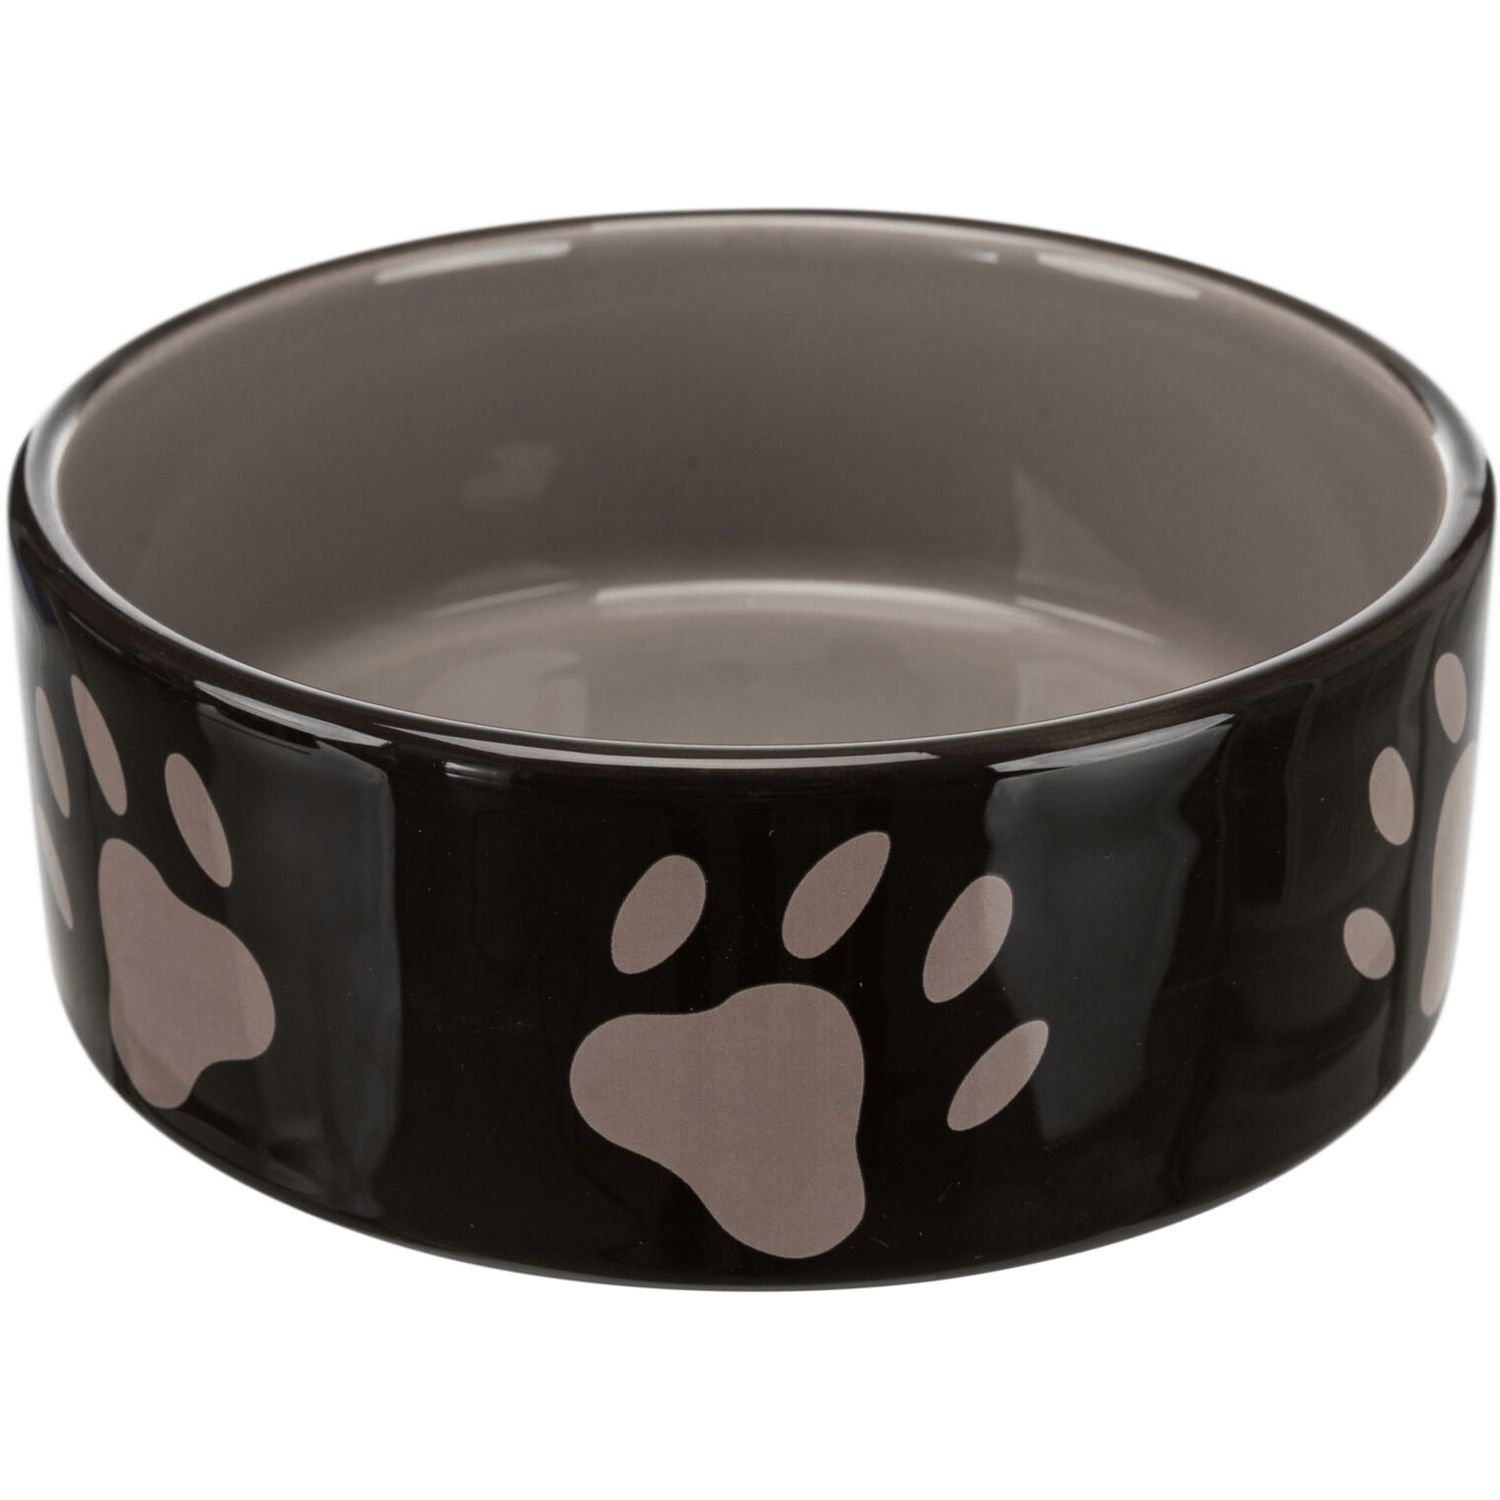 Миска Trixie для собак керамическая 1.4 л коричневая (34533) - фото 1